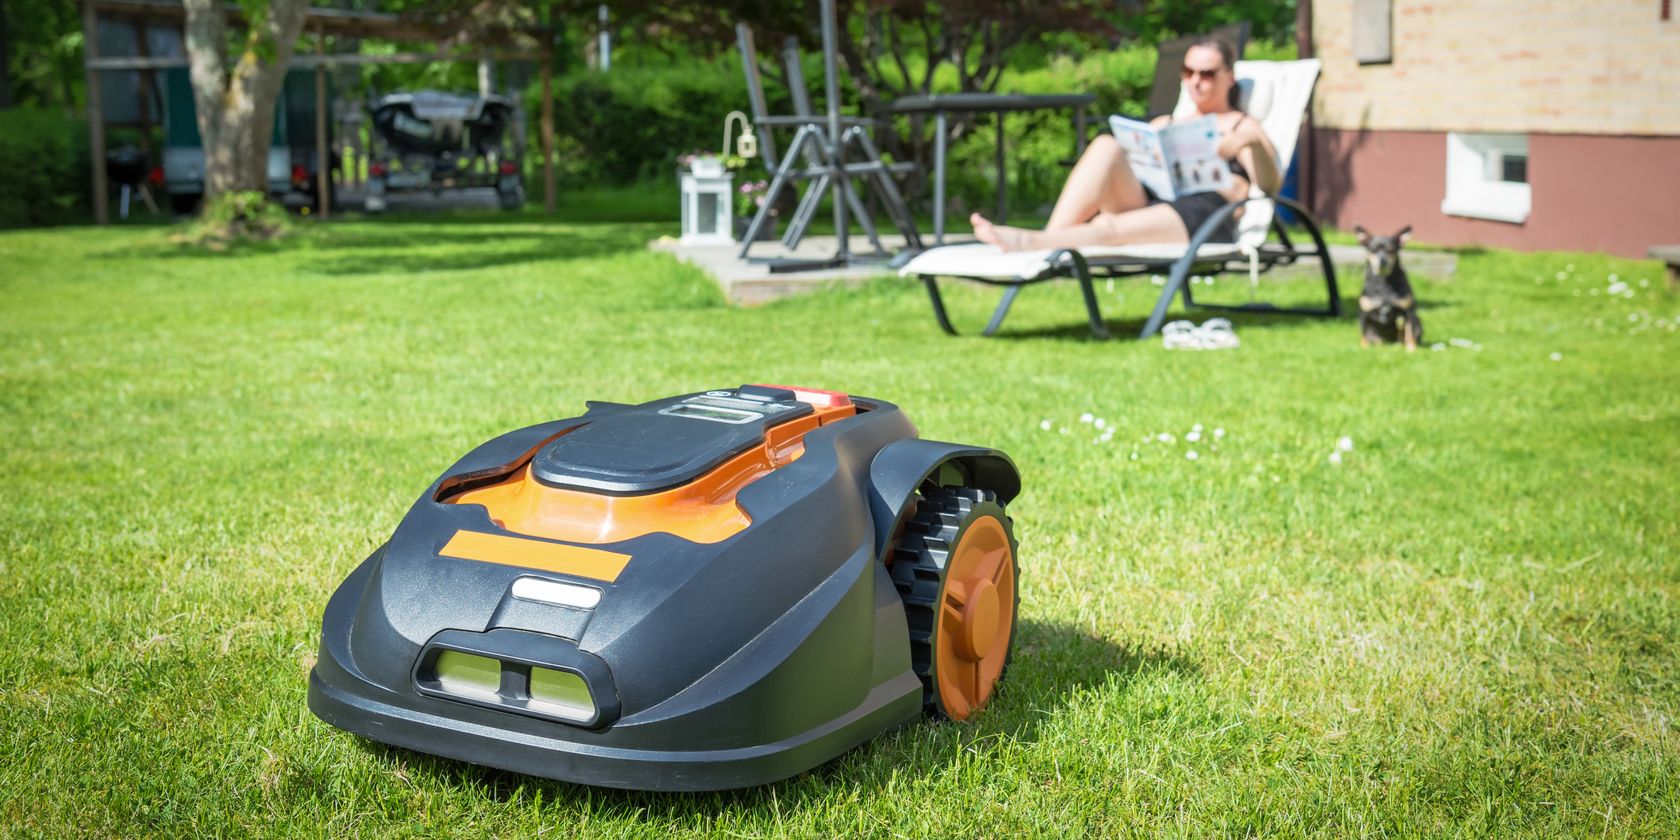 A smart lawnmower